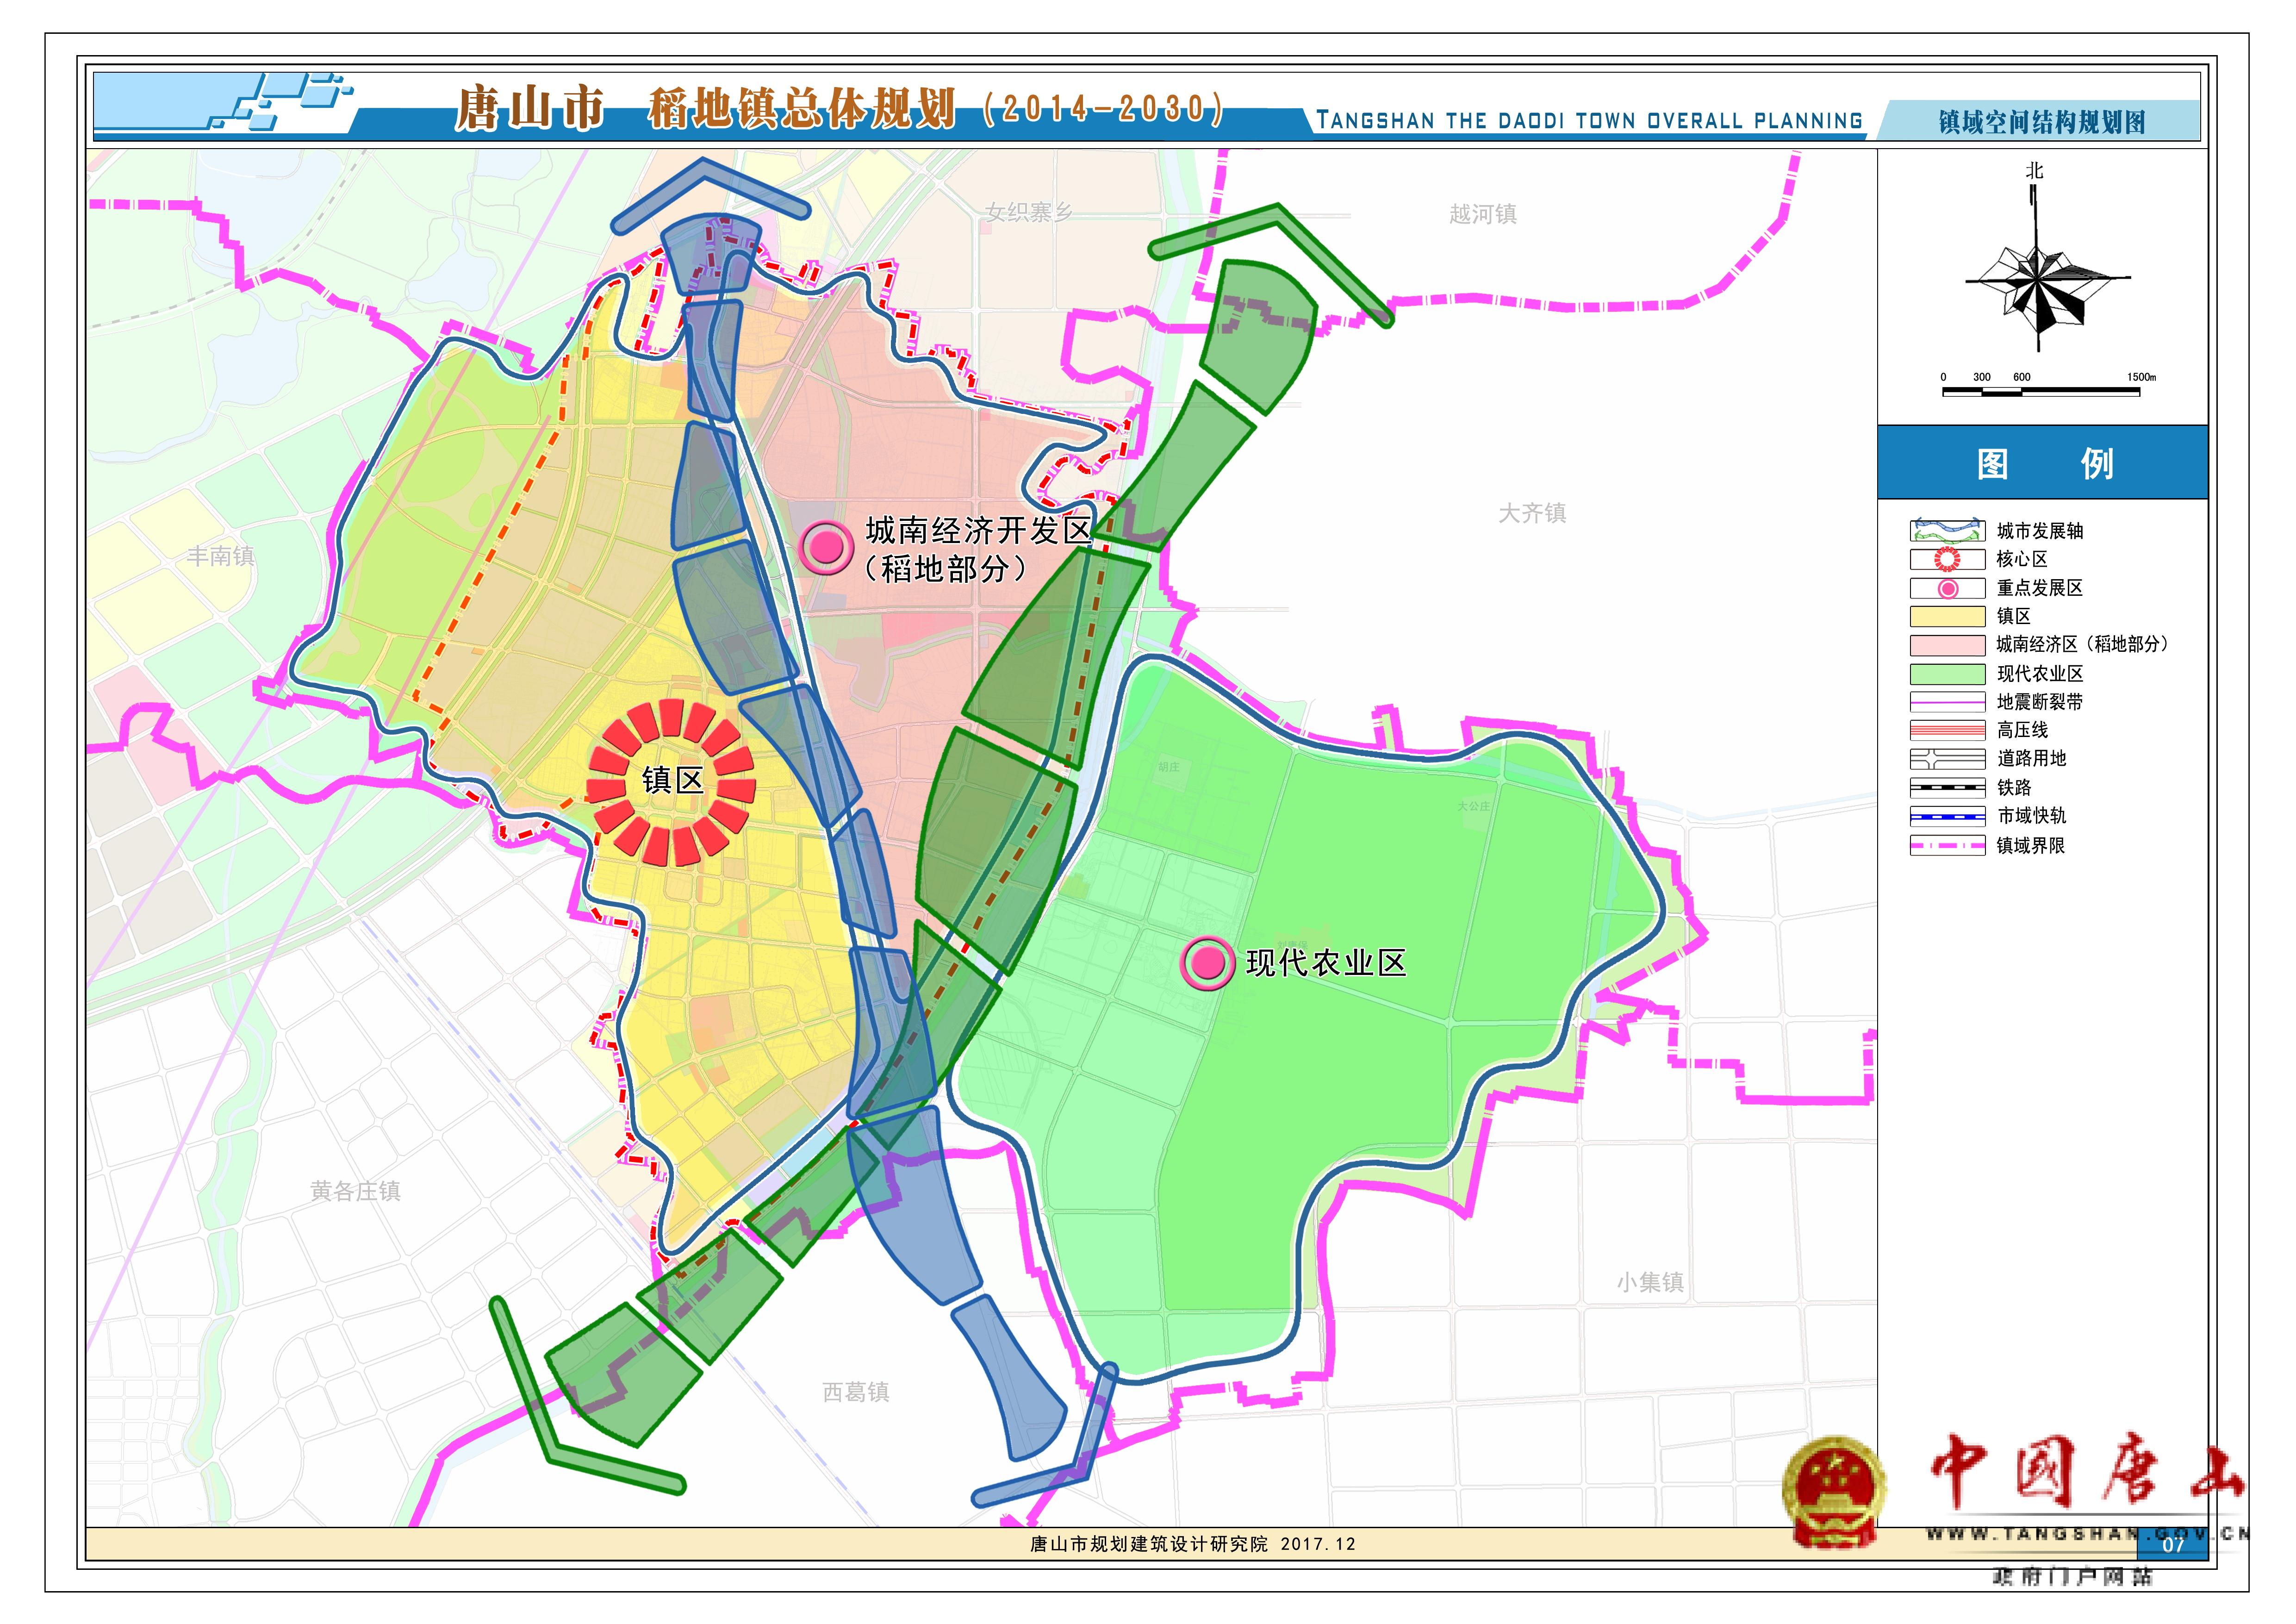 《唐山市路南区稻地镇总体规划(2014-2030)》(以下简称《总体规划》)